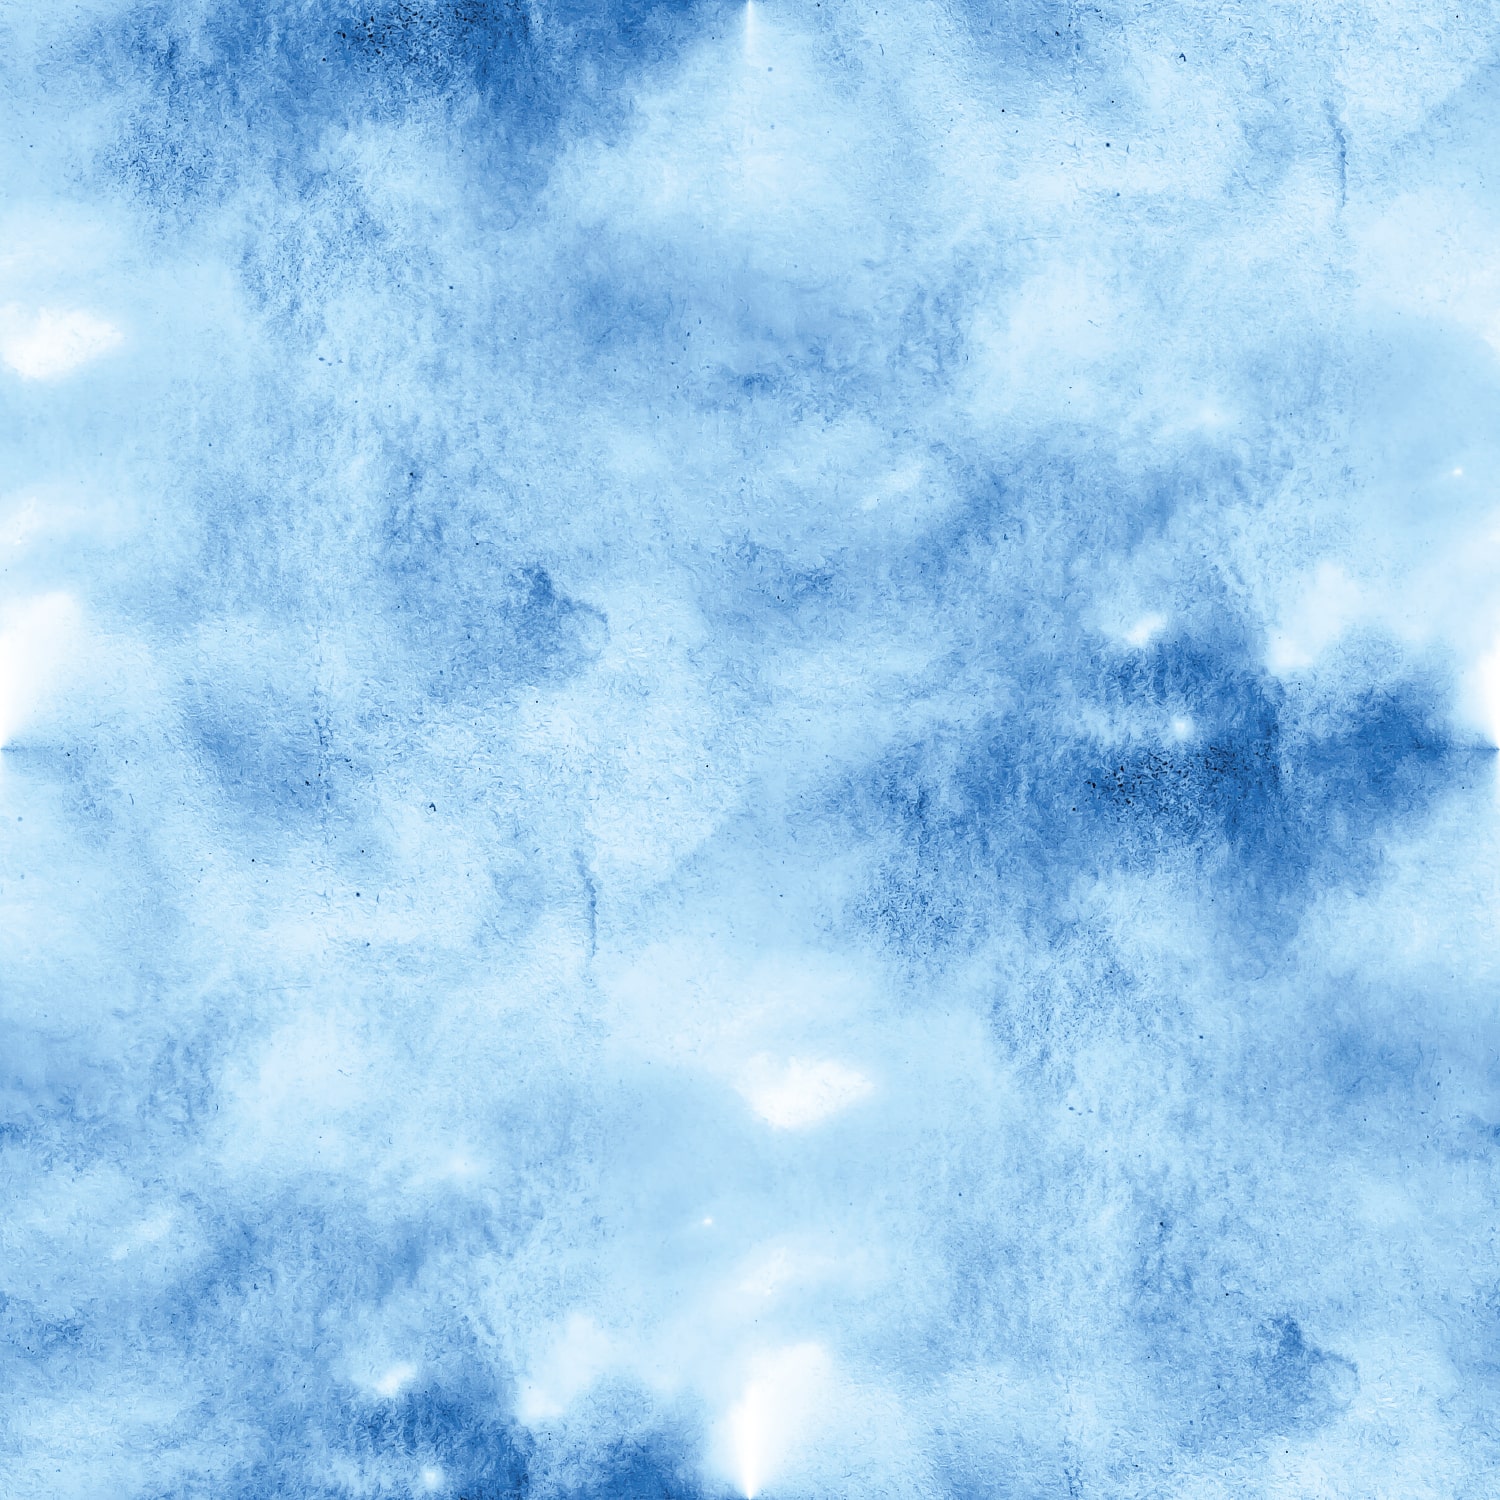 PP67-carré-papier-peint-adhesif-decoratif-revetement-vinyle-motifs-aquarelle-dégradé-bleu-renovation-meuble-mur-min